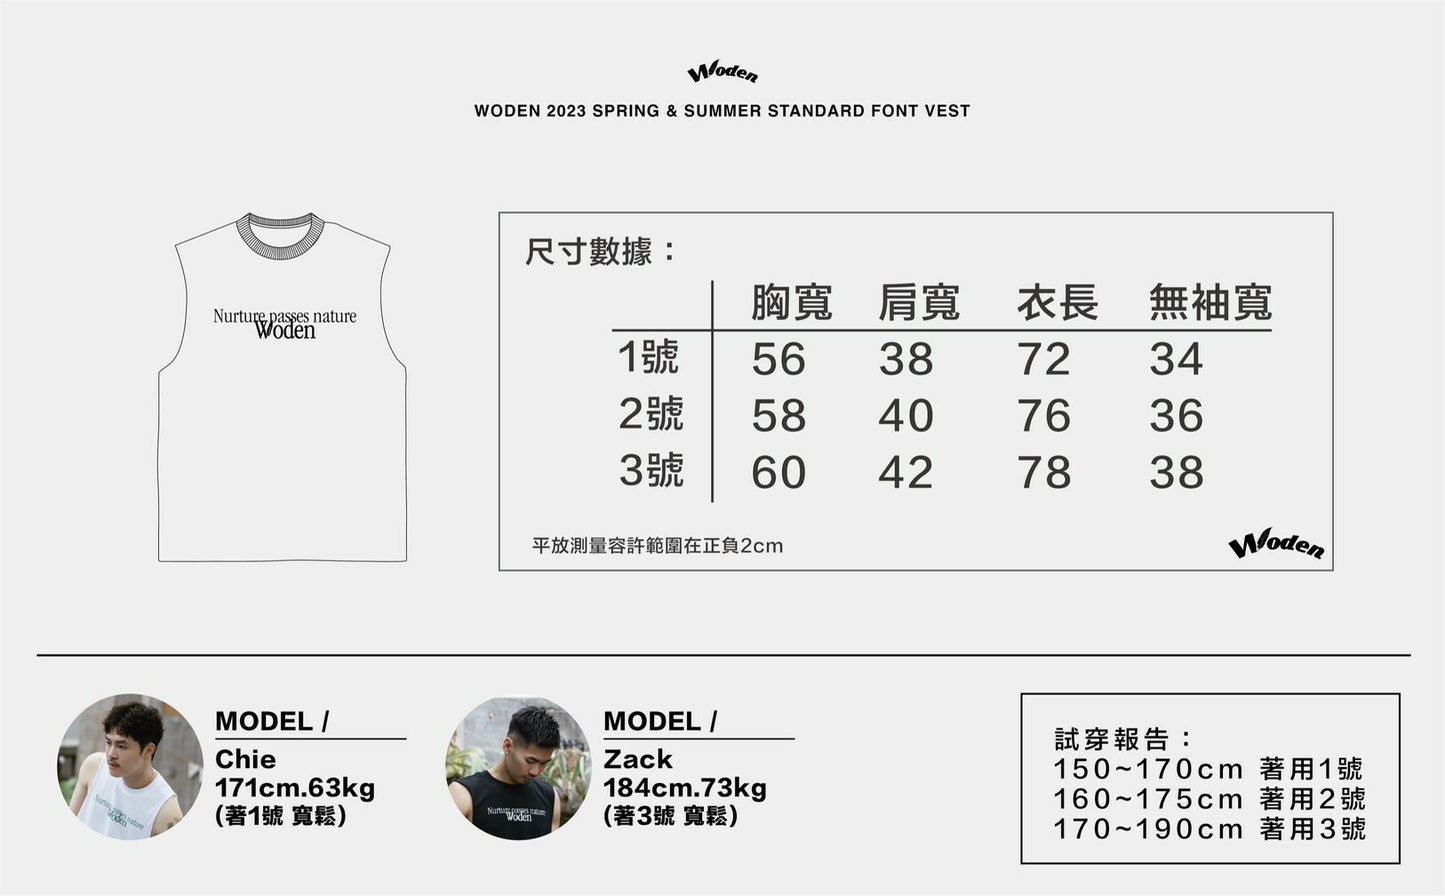 WODEN 2023 Spring & Summer 079 Standard Font Vest - 黑